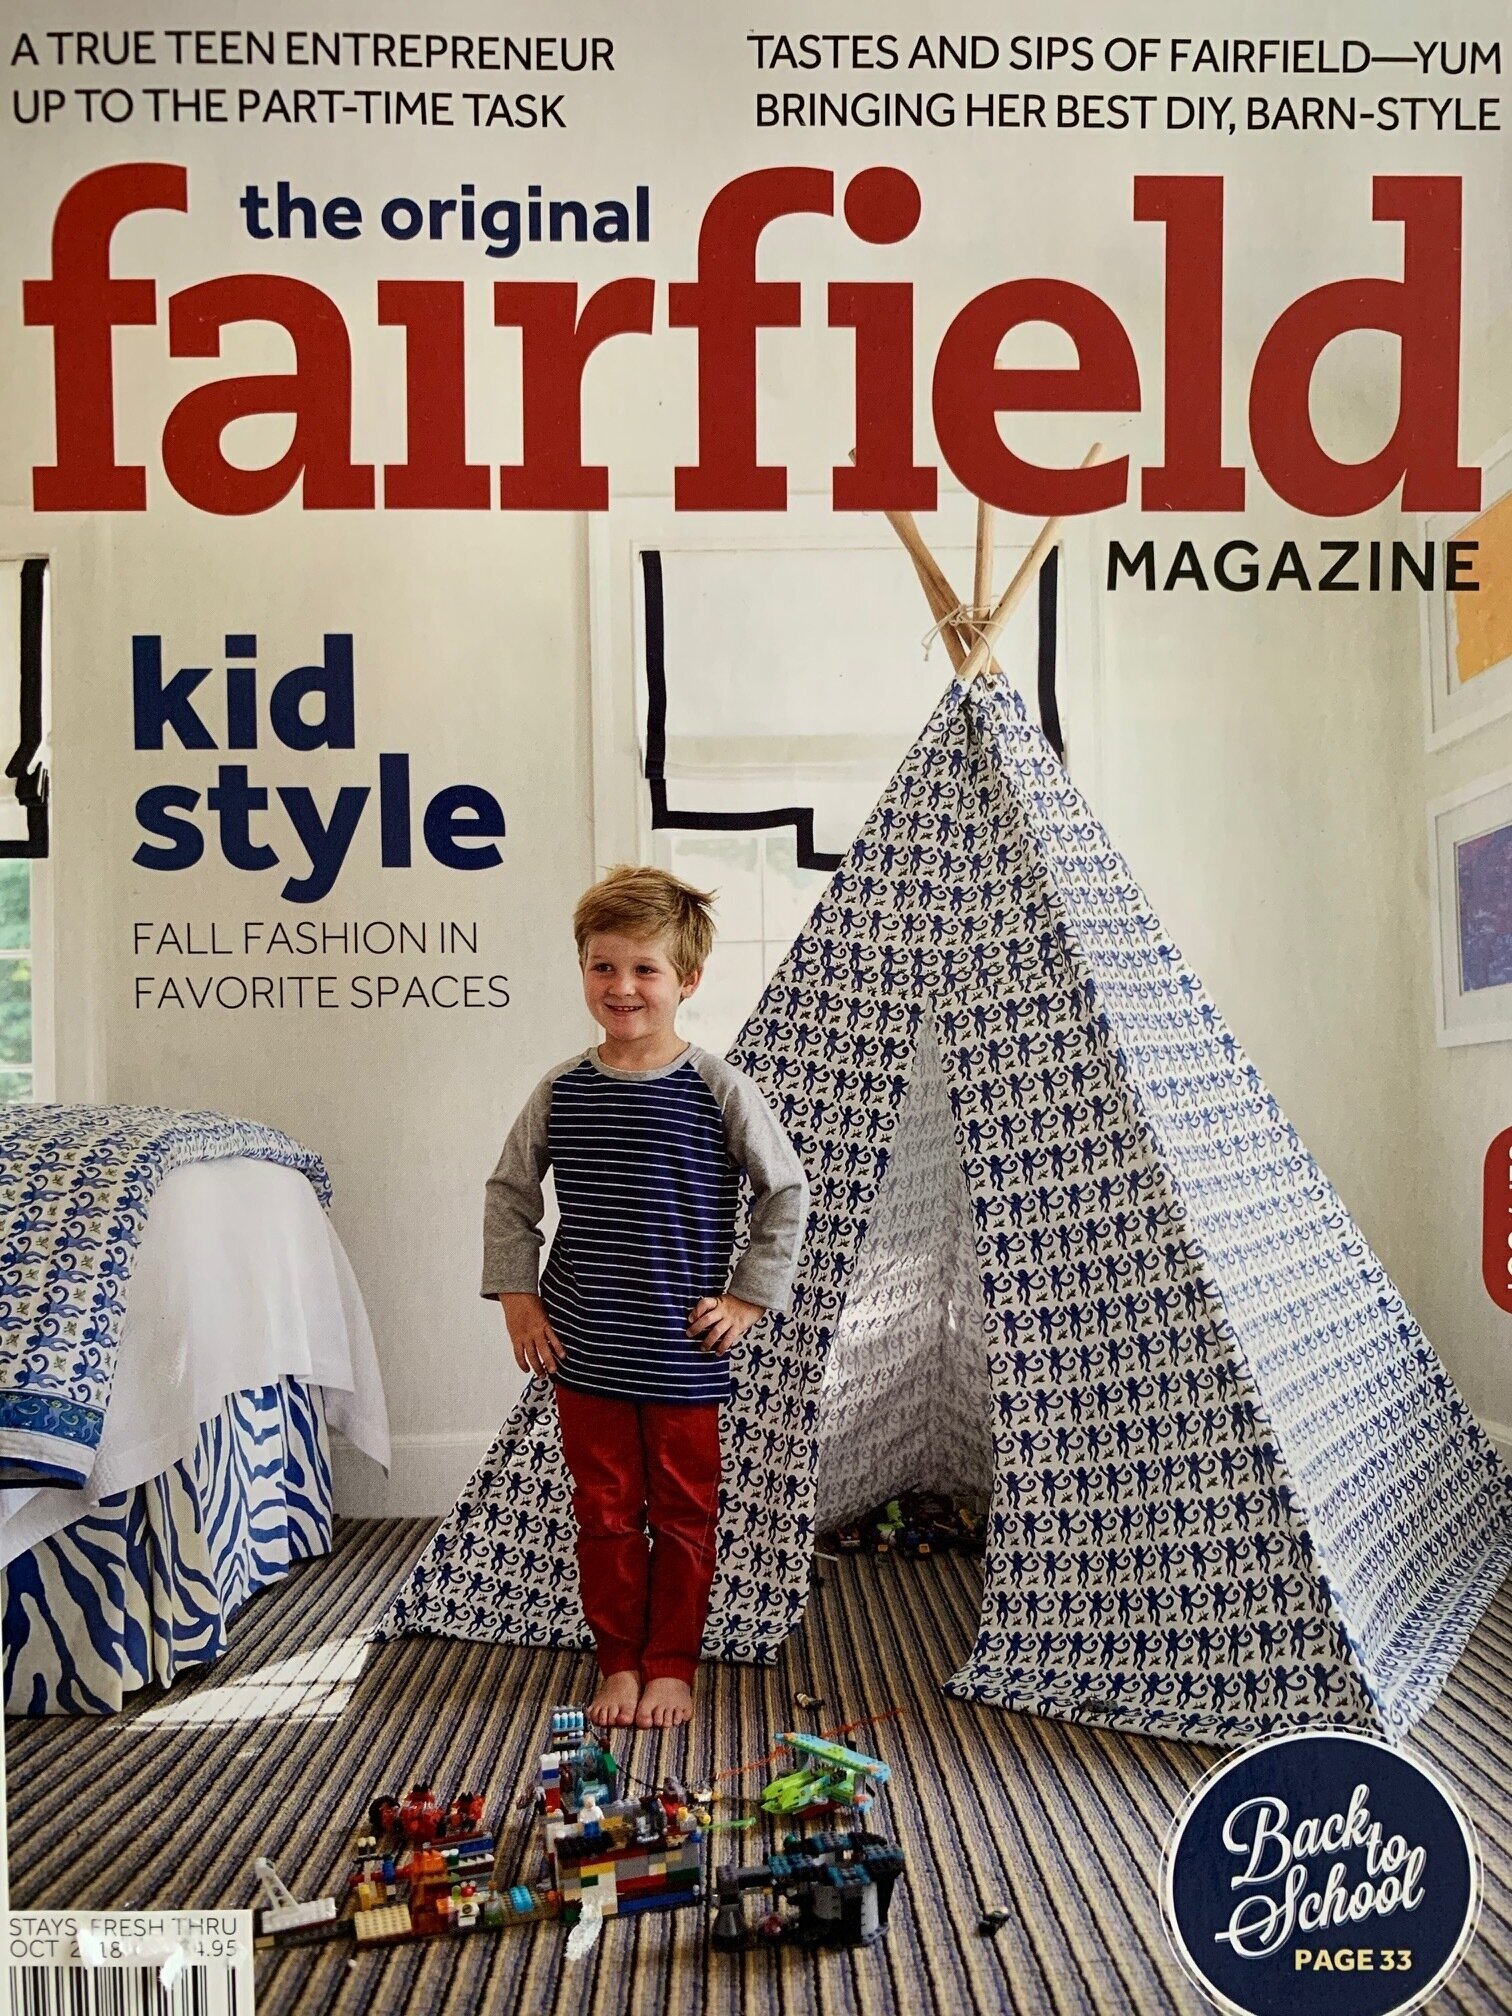 Fairfield Magazine October 2018